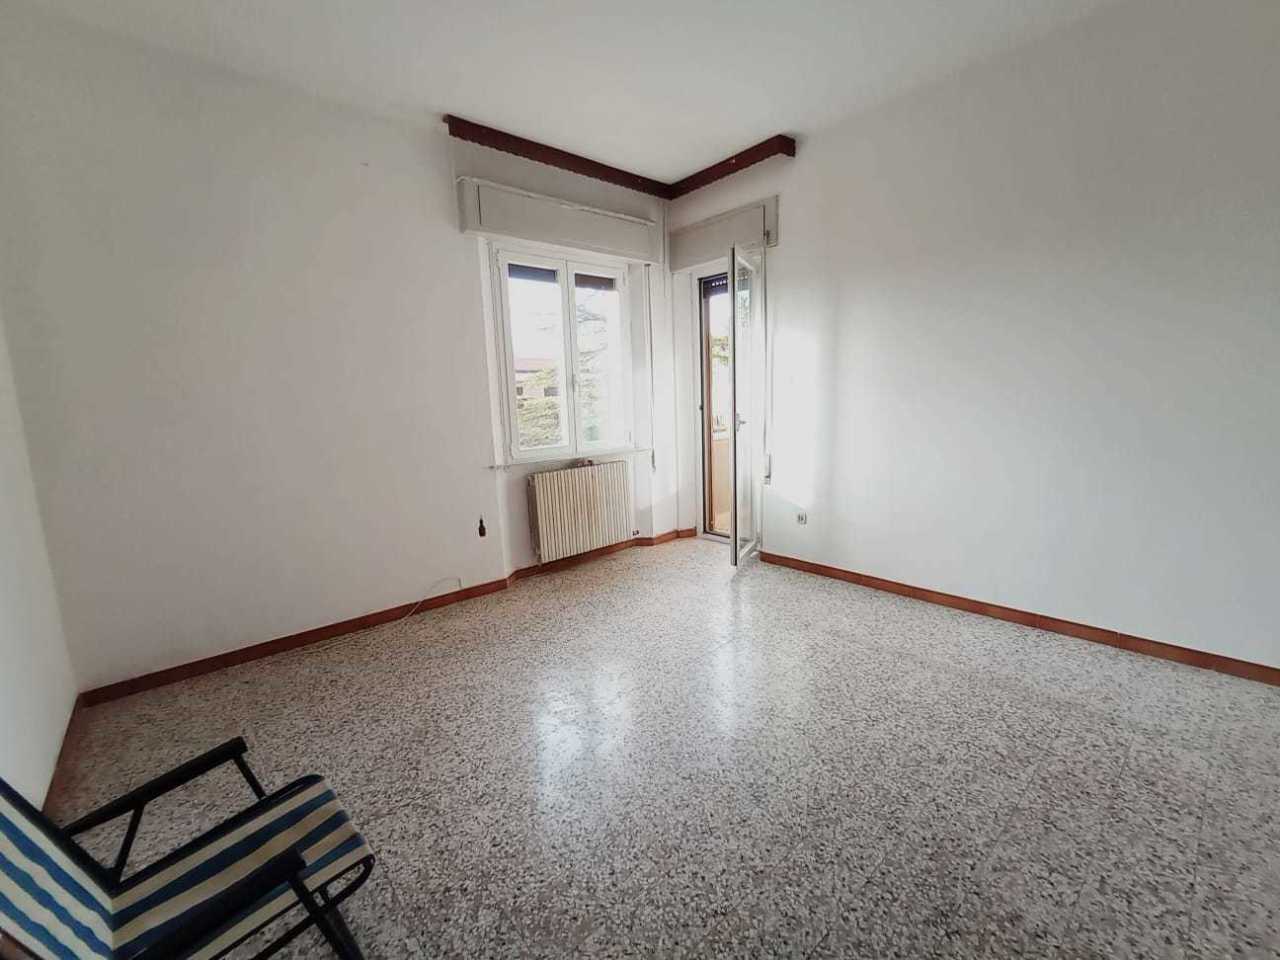 Appartamento in vendita a Morro d'Alba, 9999 locali, prezzo € 54.000 | PortaleAgenzieImmobiliari.it